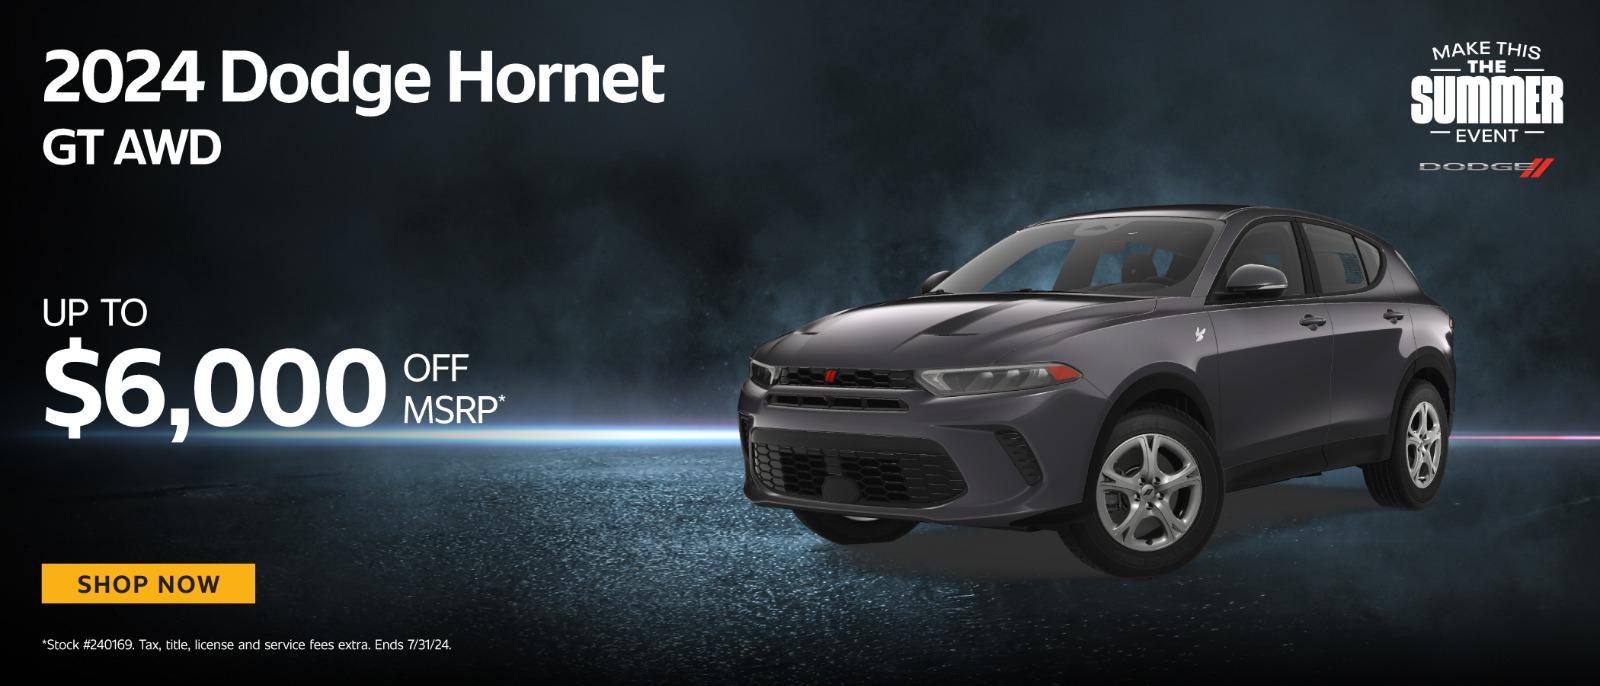 2024 Dodge Hornet Up to $6,00 off MSRP